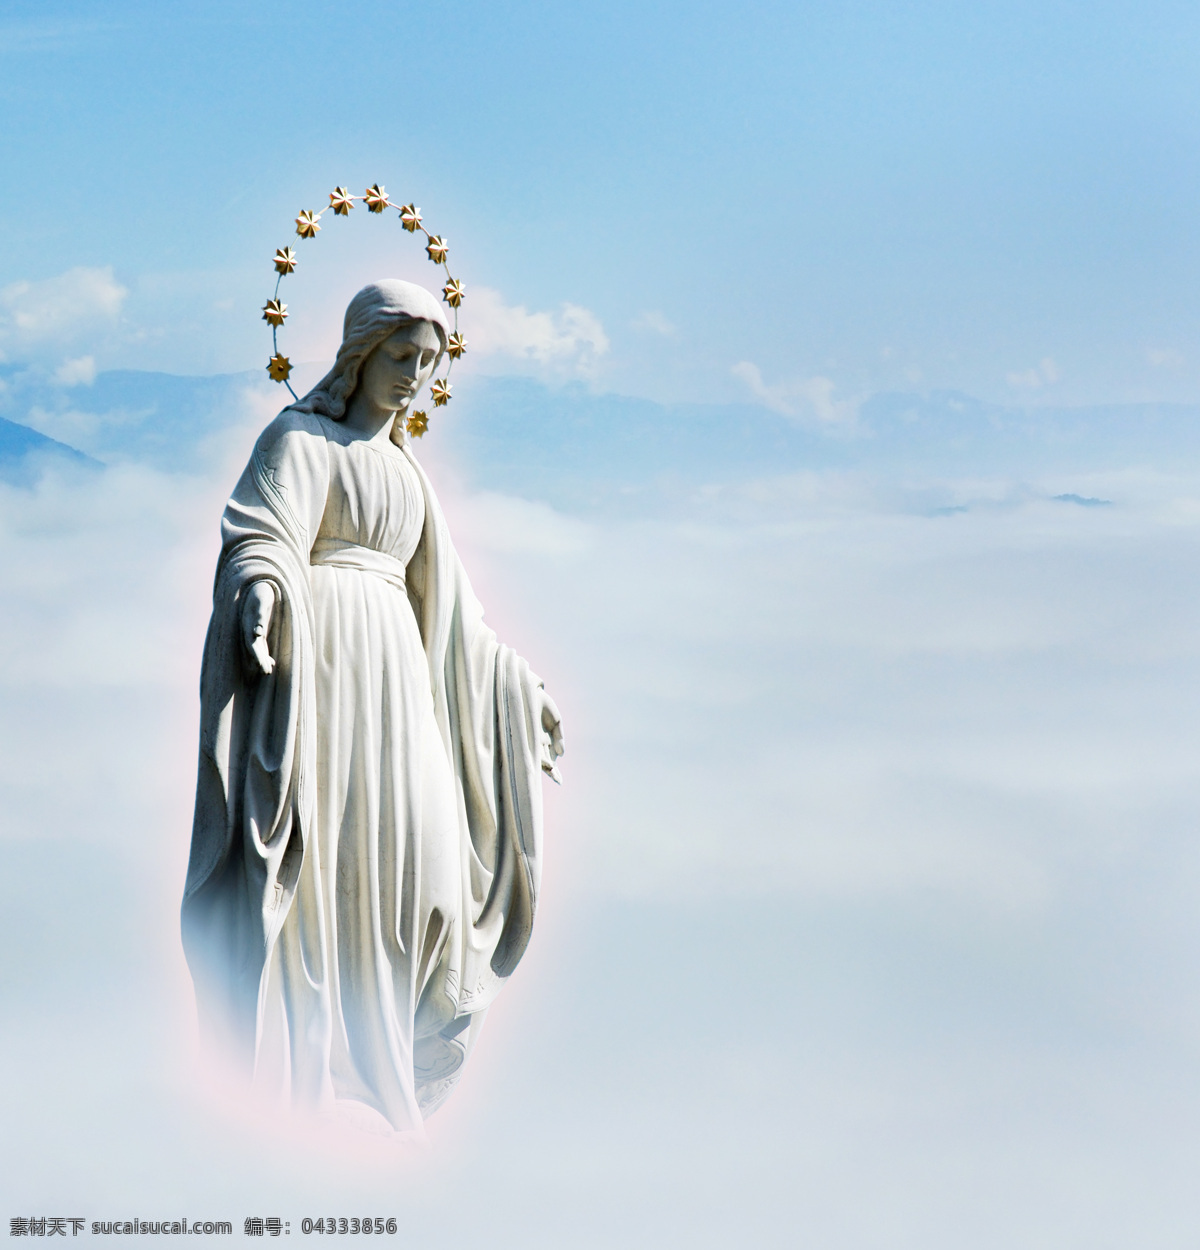 耶稣 雕塑 耶稣塑像 耶稣雕塑 耶稣雕像 天空 白云 基督教 生活人物 人物图片